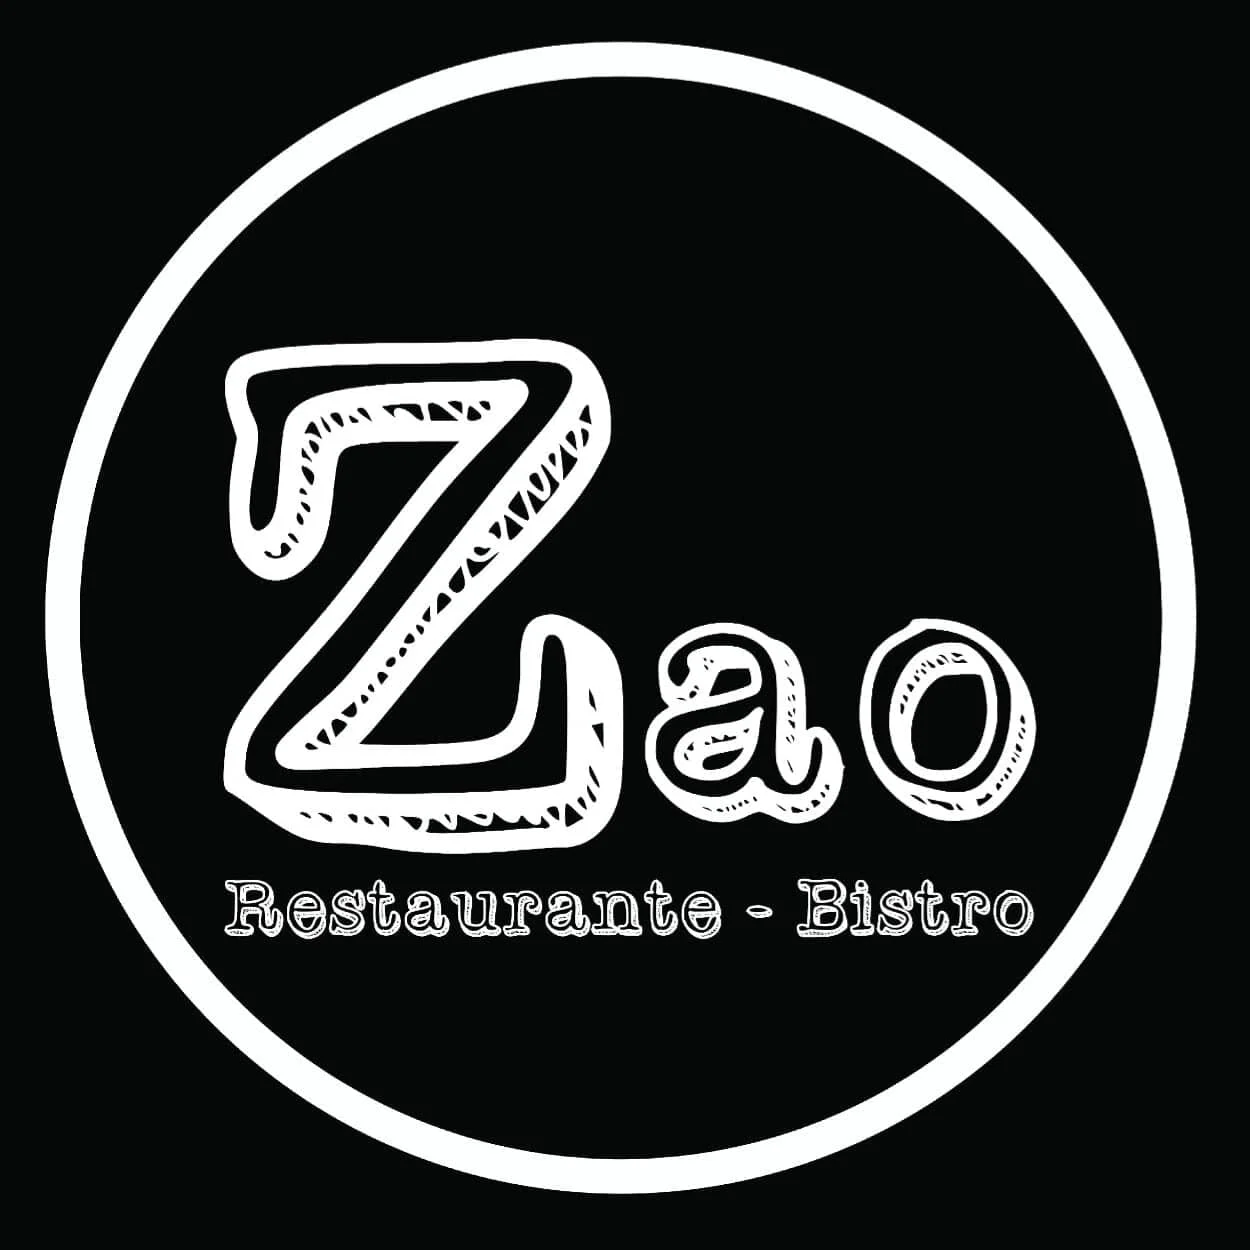 Restaurante-zao-restaurante-bistro-26081